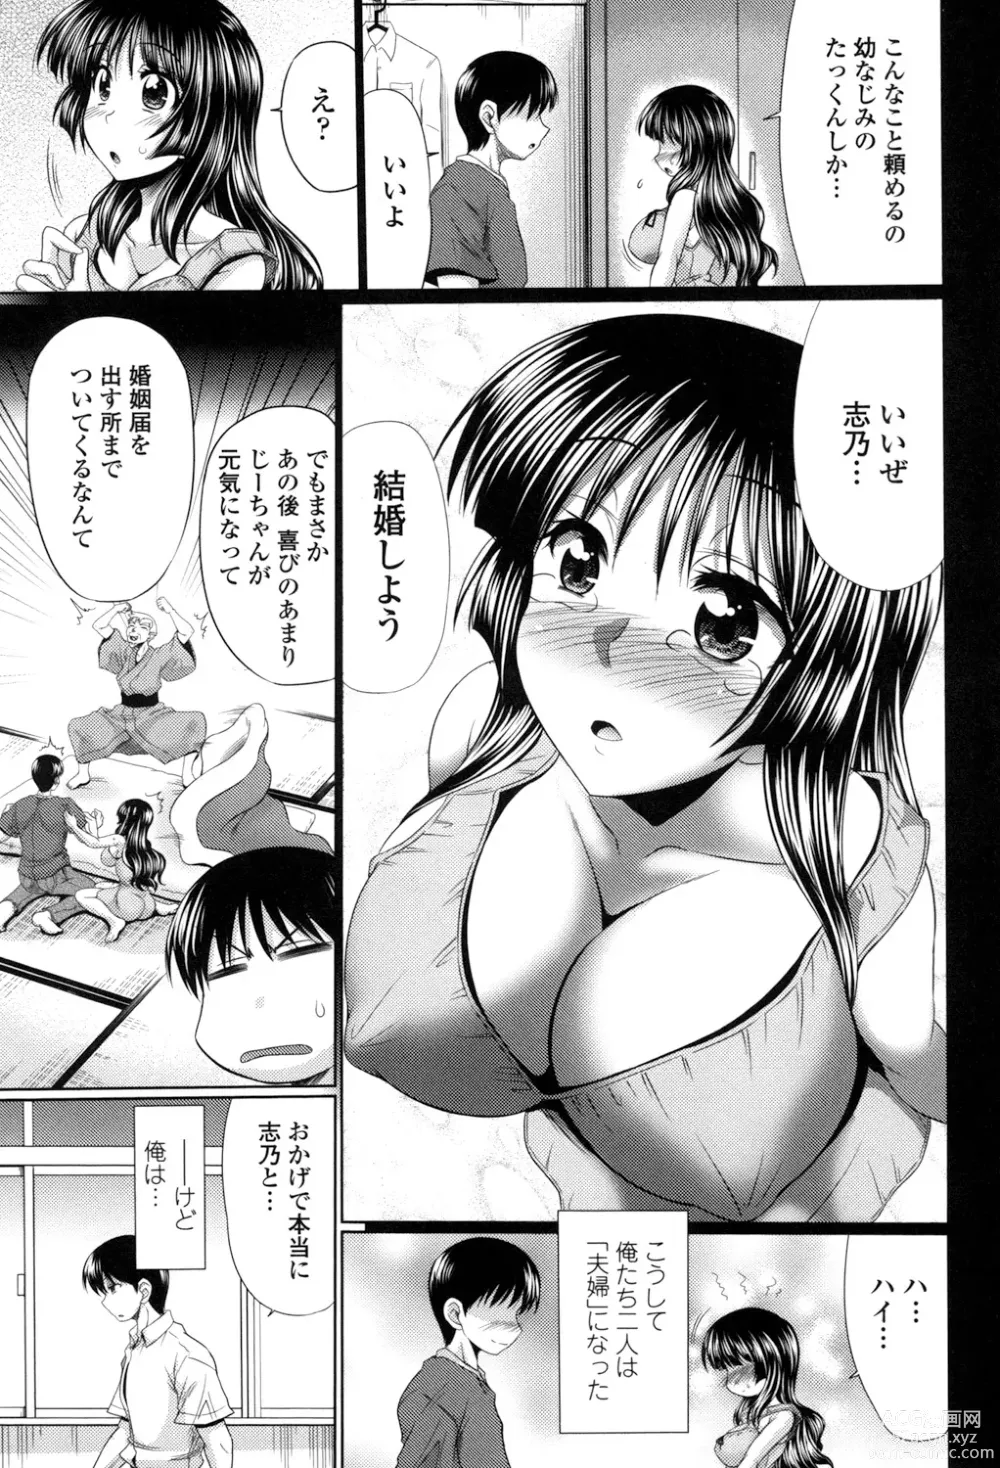 Page 9 of manga Class YoMaid